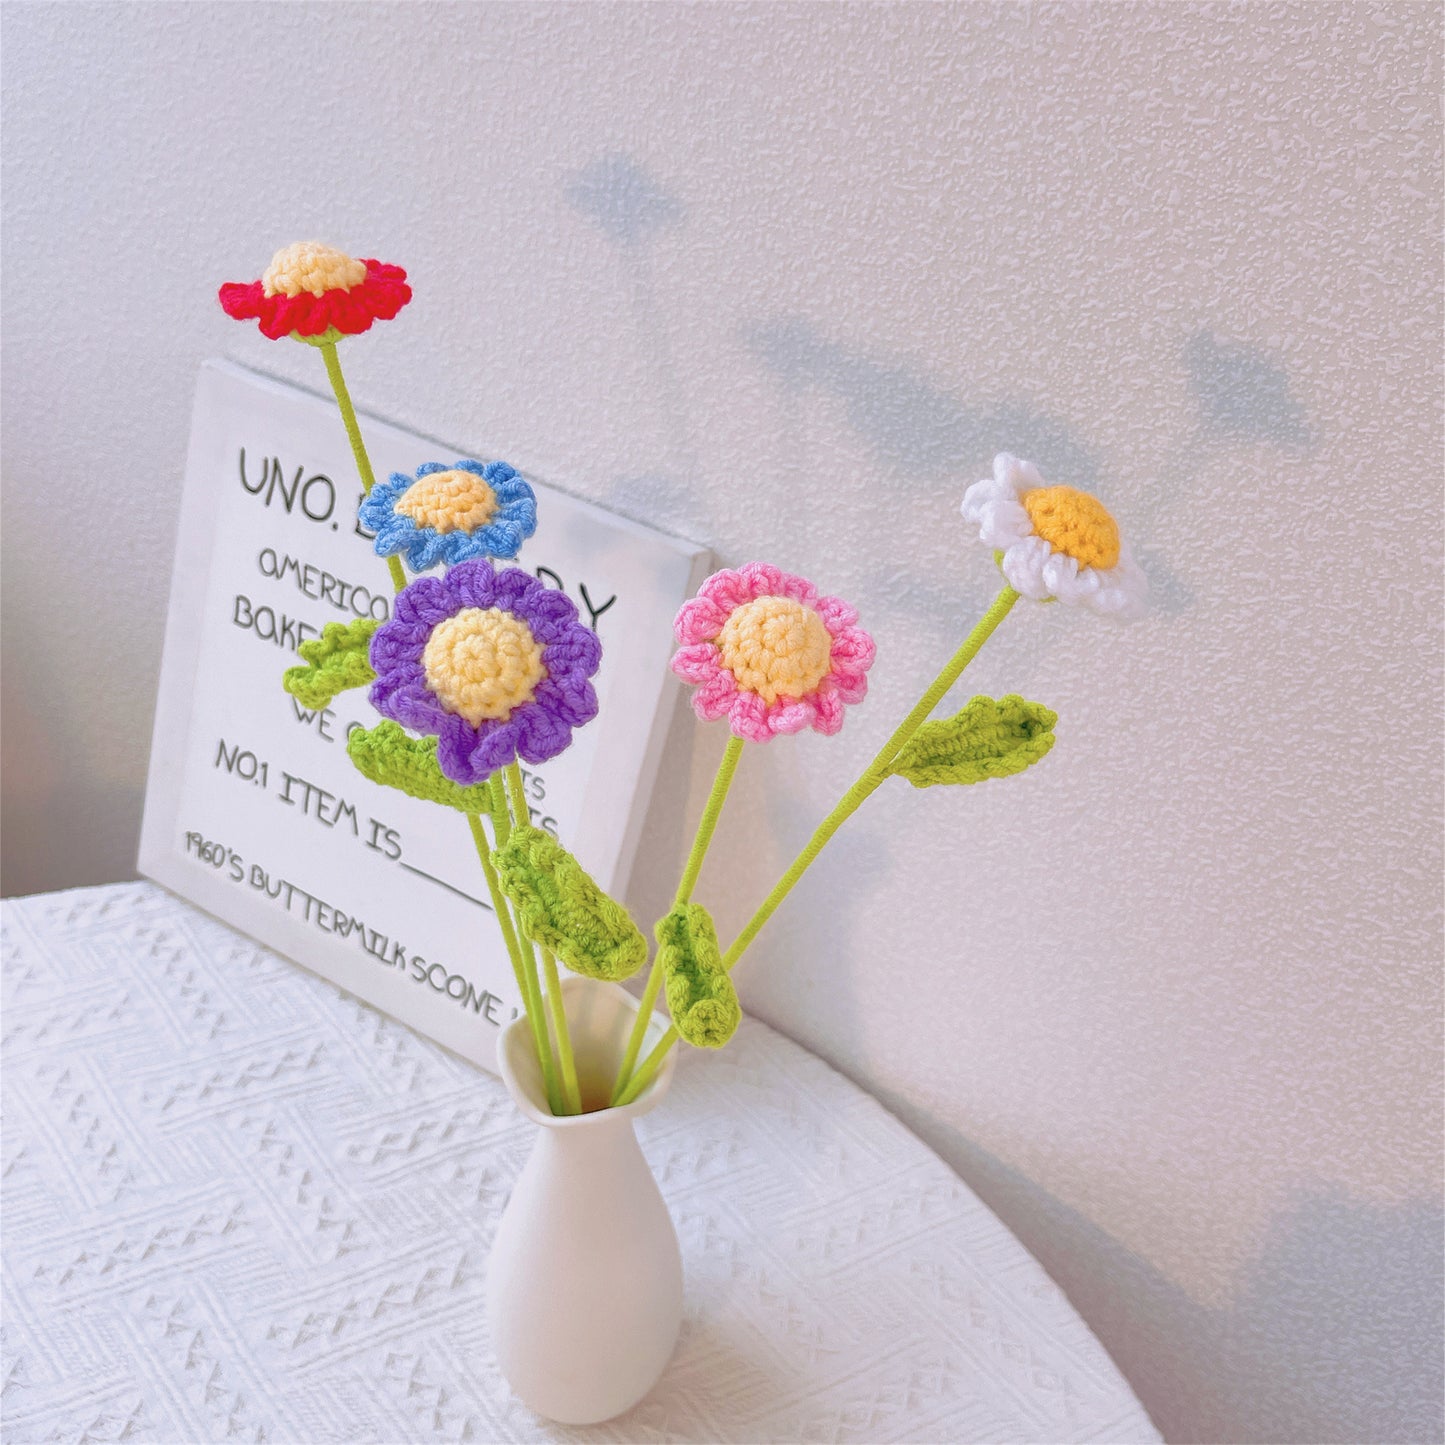 Sunny Meadow: Handgefertigter gehäkelter kleiner Gänseblümchenpfahl für eine fröhliche Gartendekoration